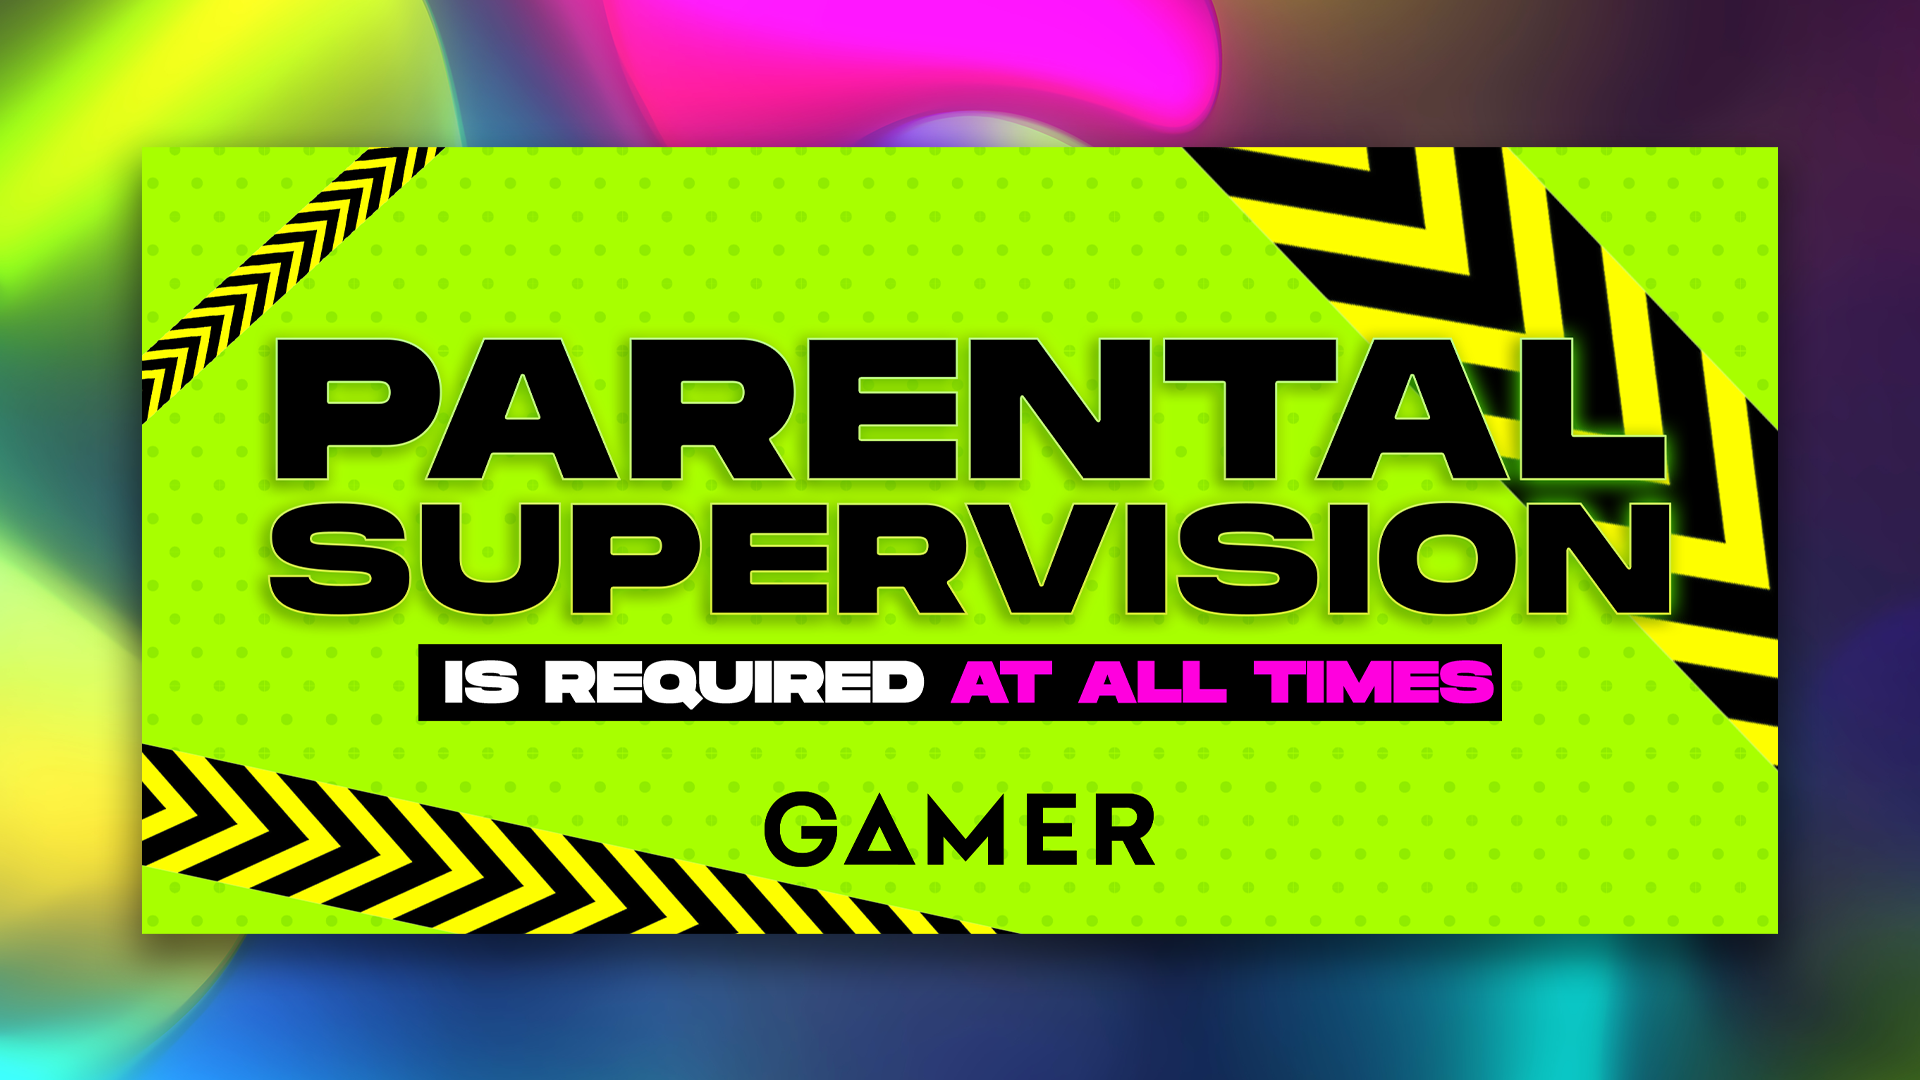 GAMER-_-Parental-Supervision.png